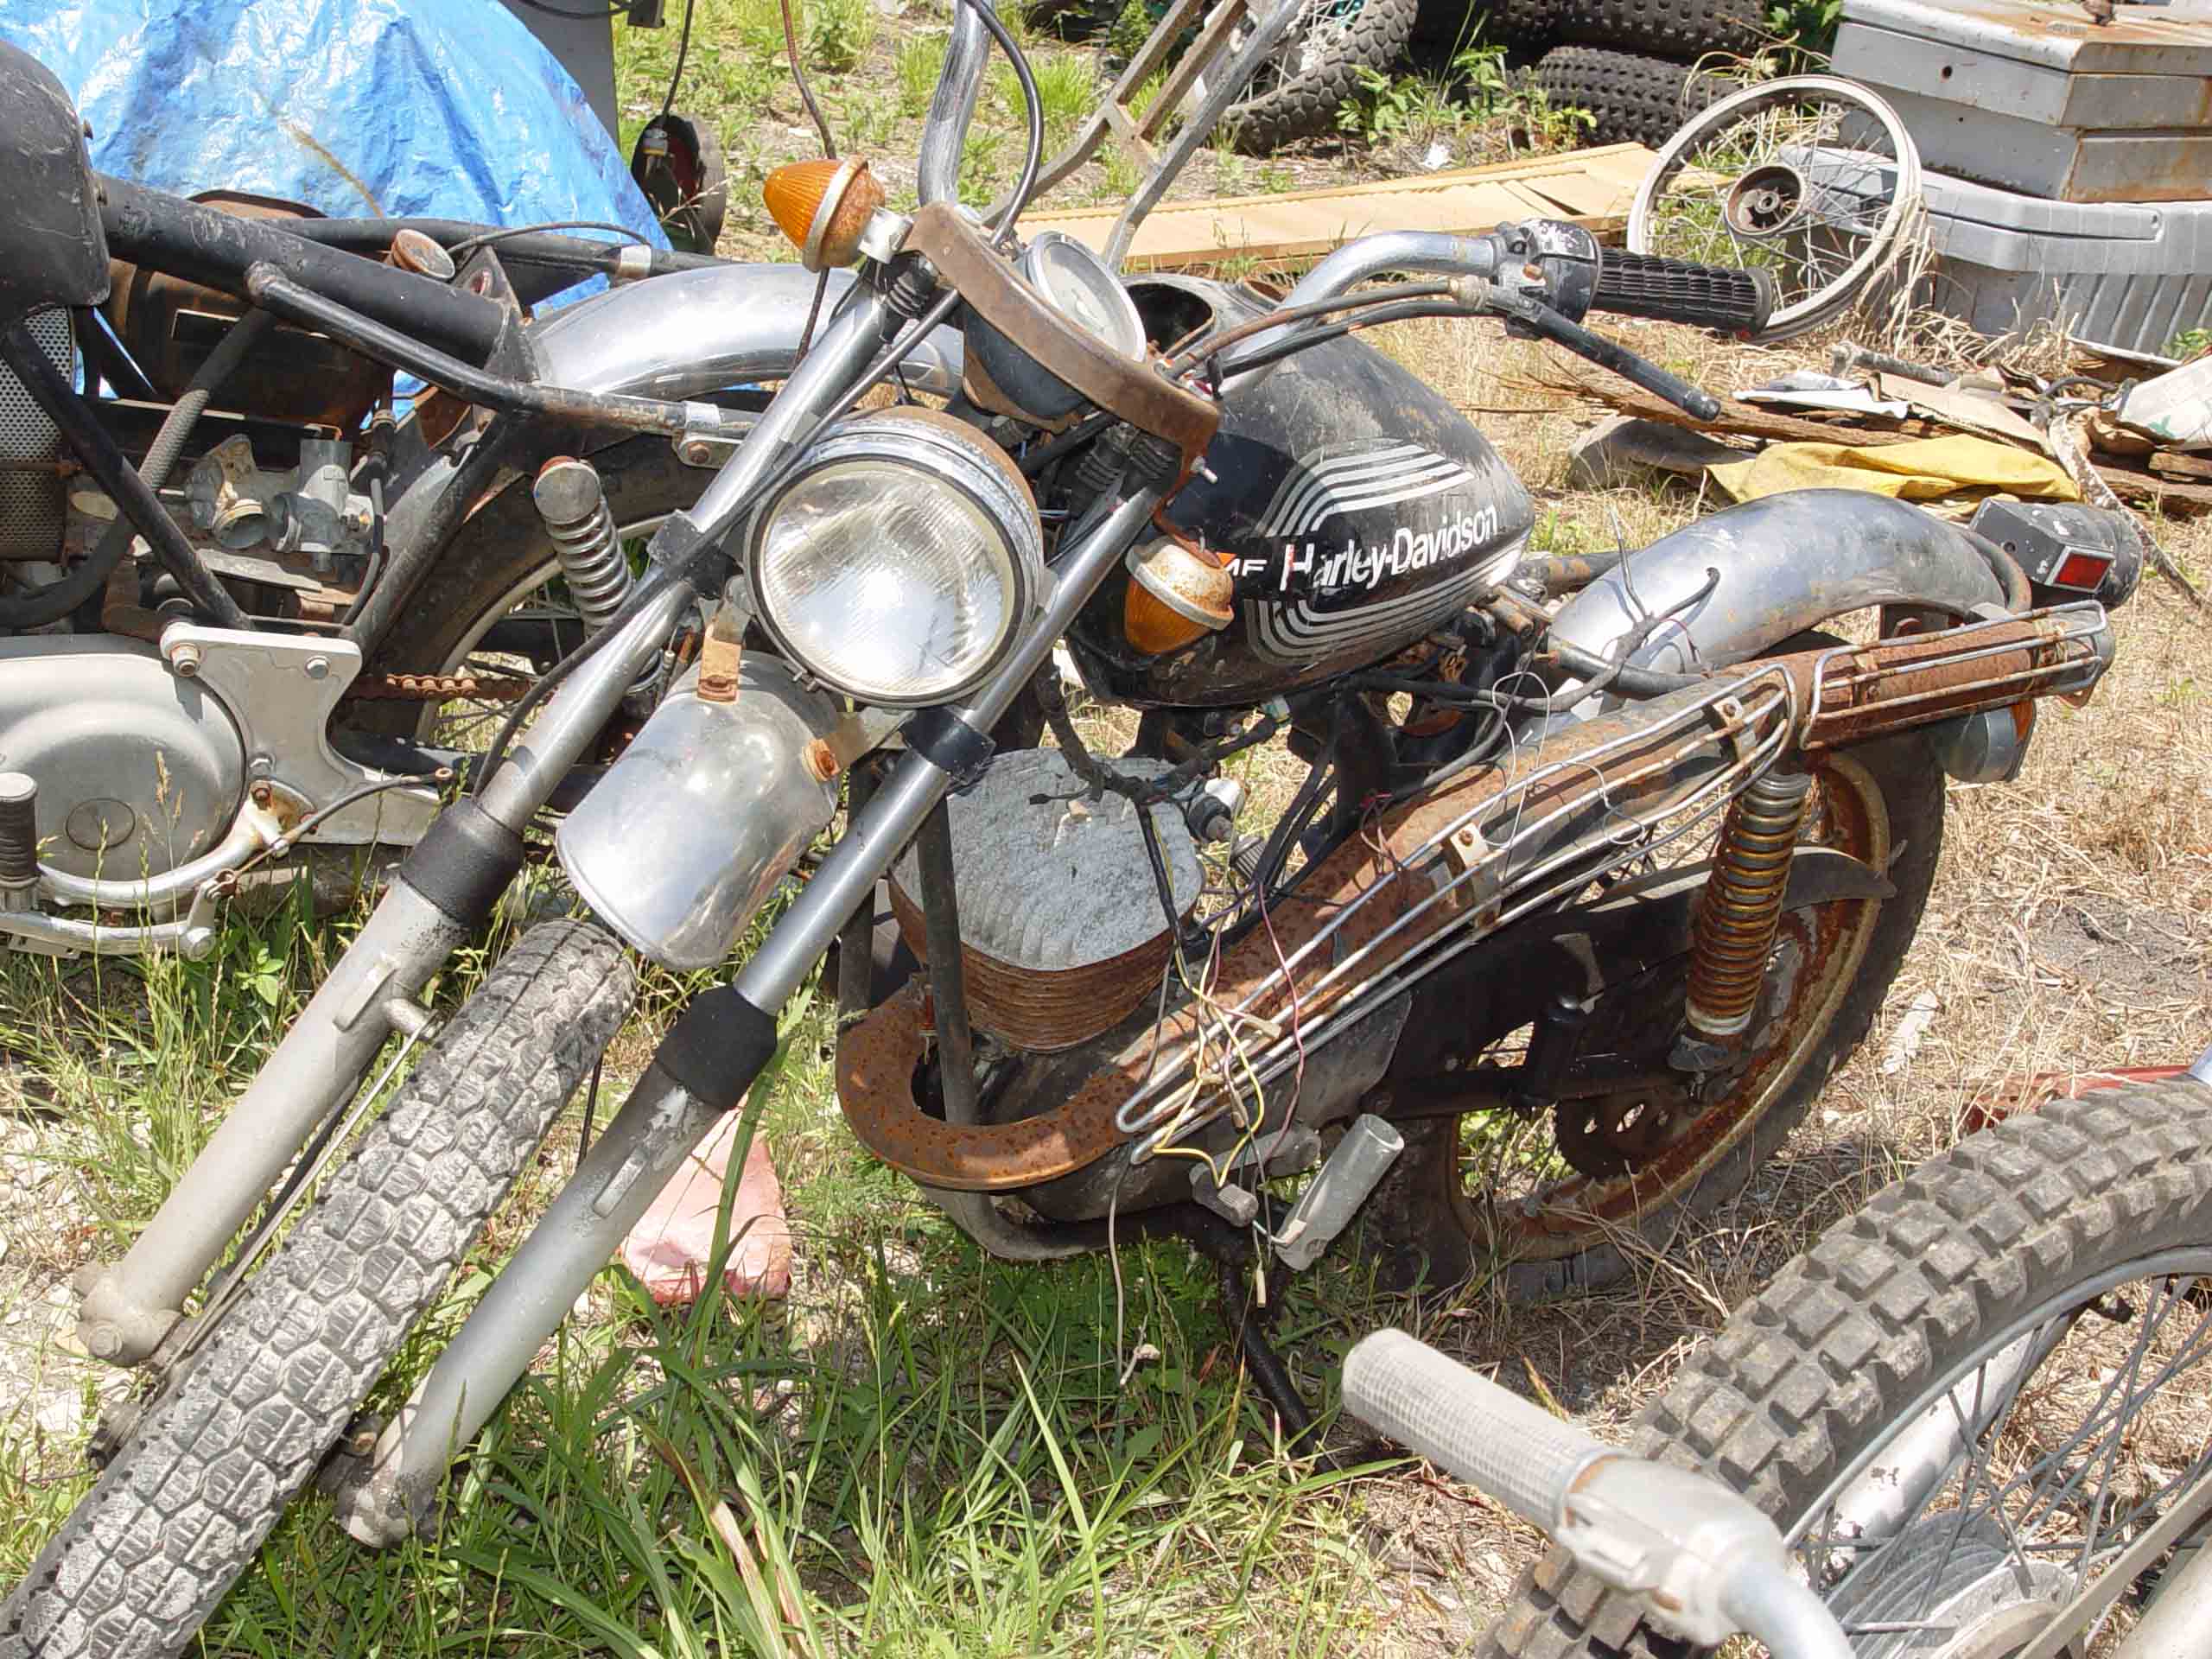 Harley Davidson Motorcycle Salvage Yard Off 68 Medpharmres Com